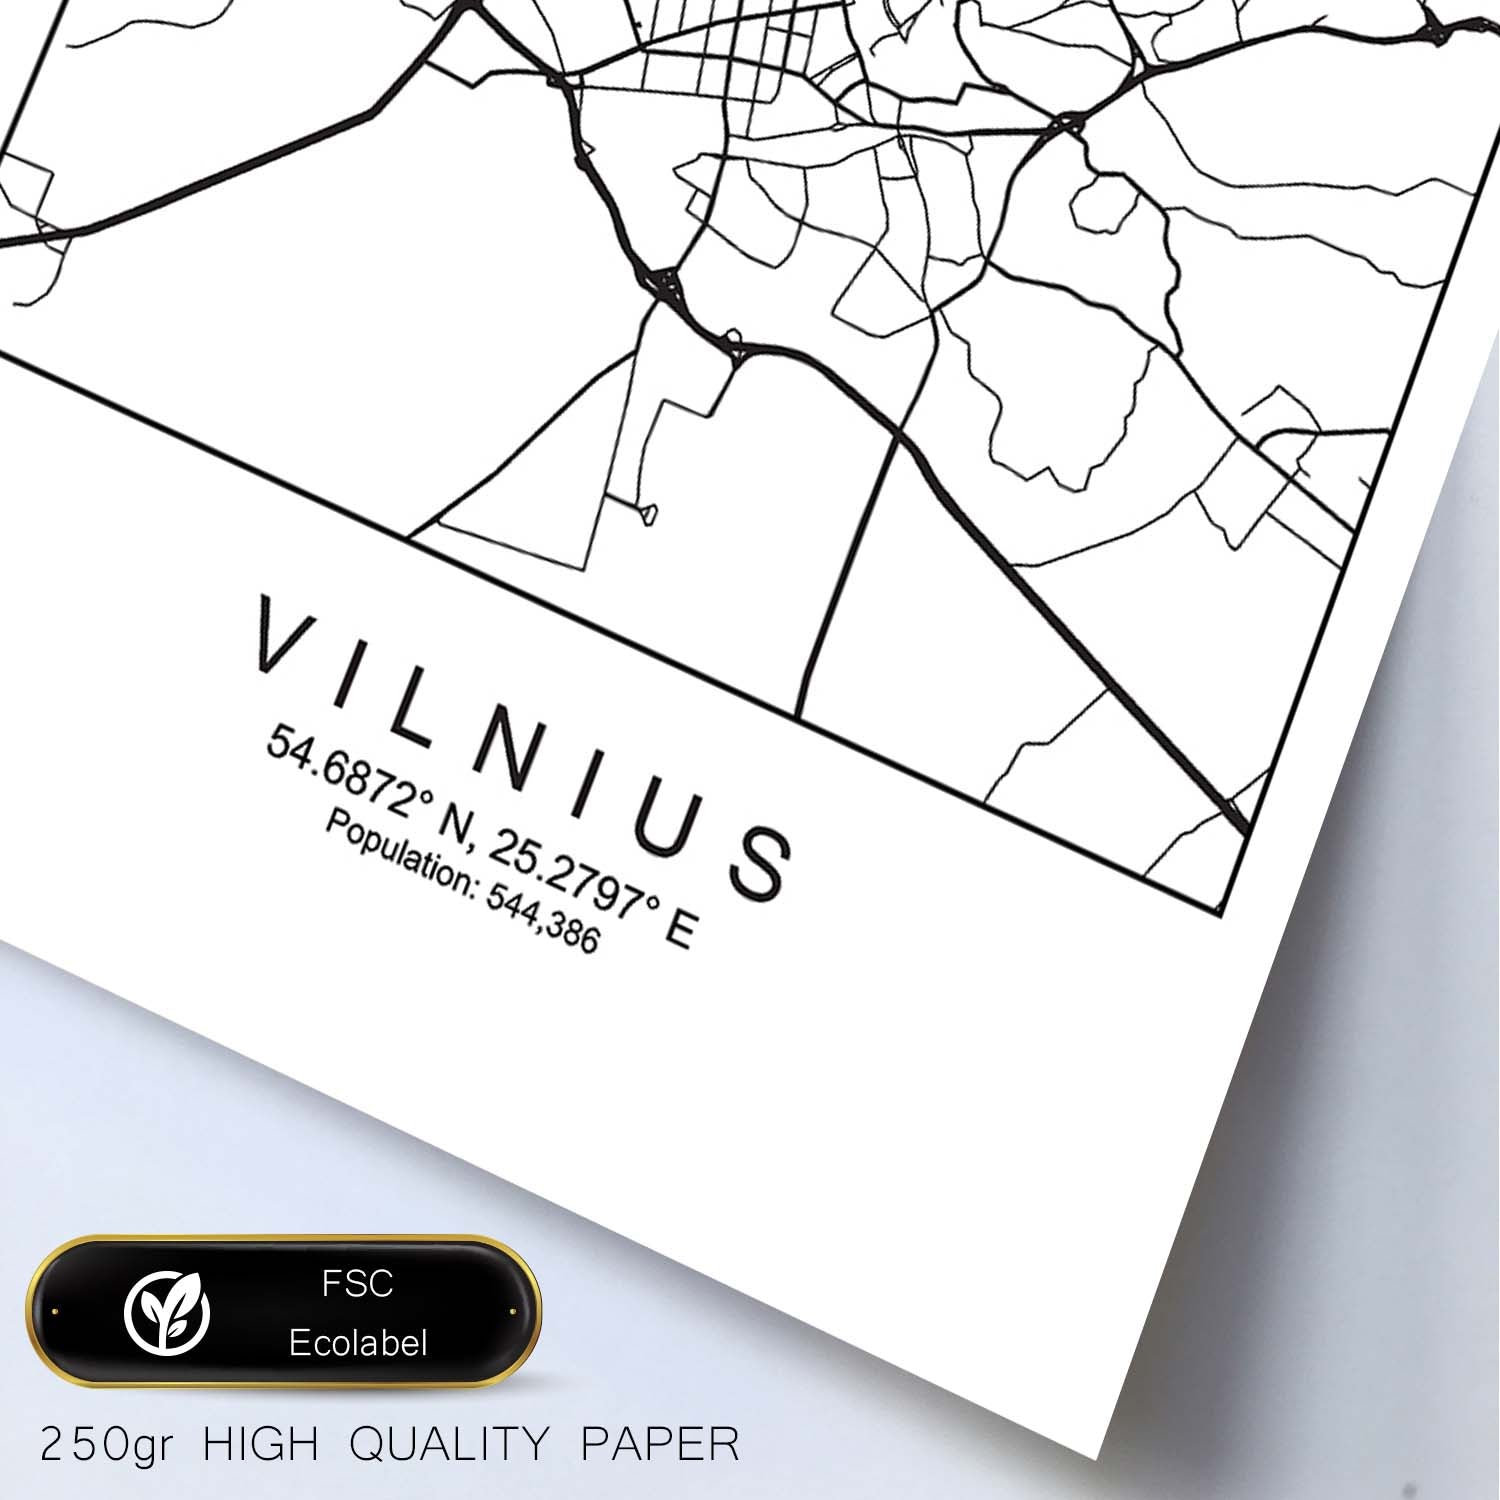 Lámina Mapa de la Ciudad Vilnius Estilo nordico en Blanco y negro.-Artwork-Nacnic-Nacnic Estudio SL